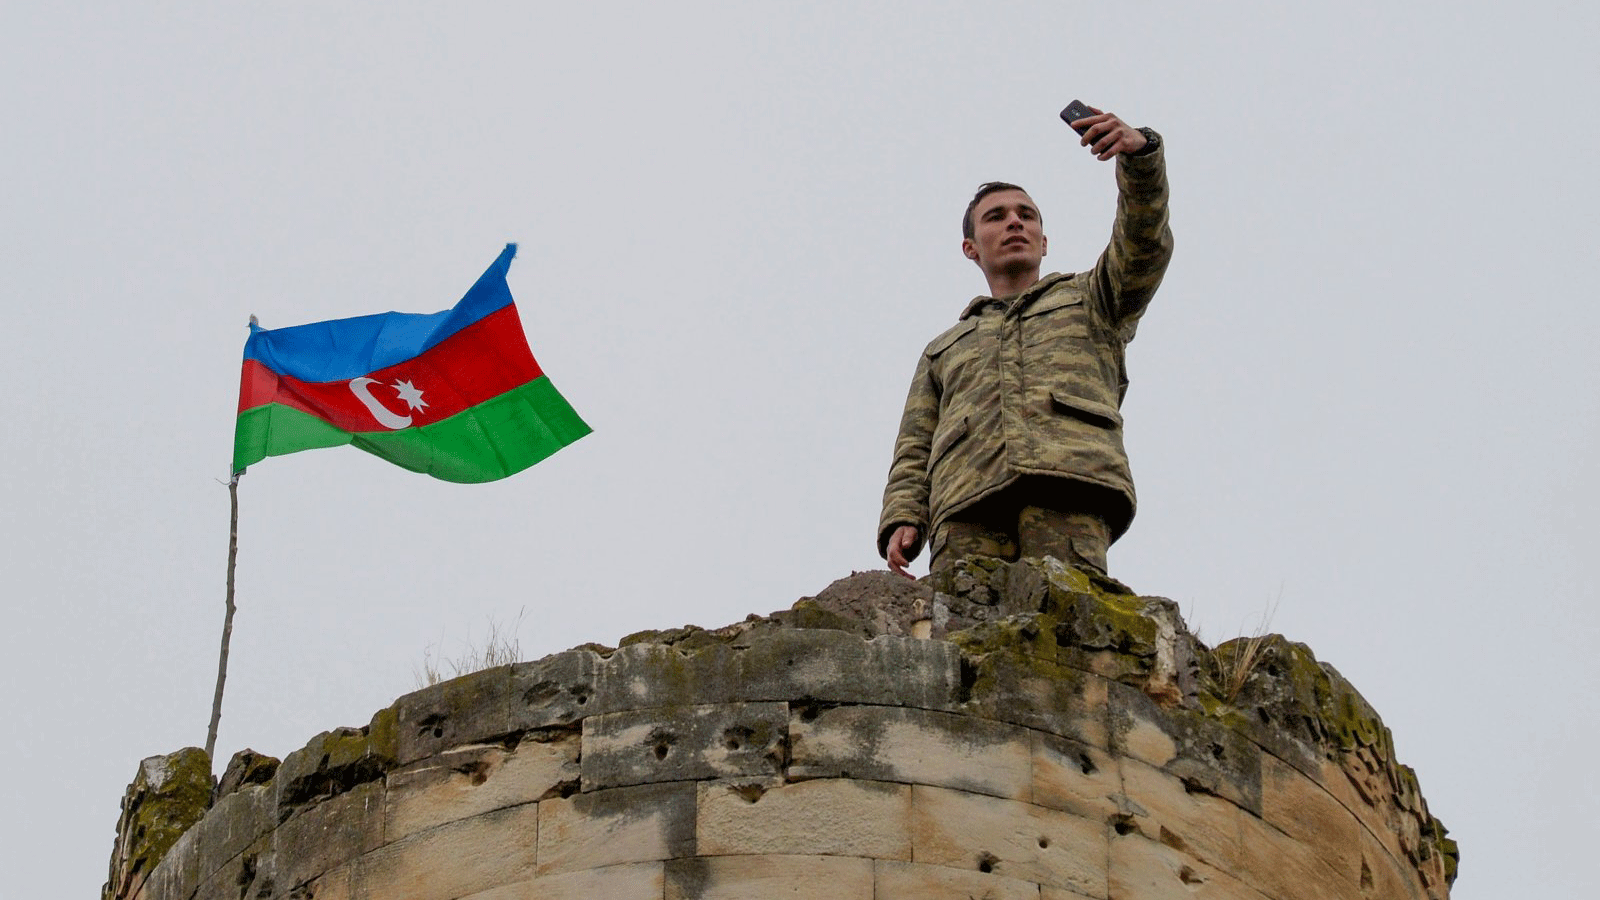 جندي من جيش أذربيجان يلتقط صورة سيلفي فوق برج في المناطق المحتلة يوم 26 تشرين الثاني/نوفمبر 2020